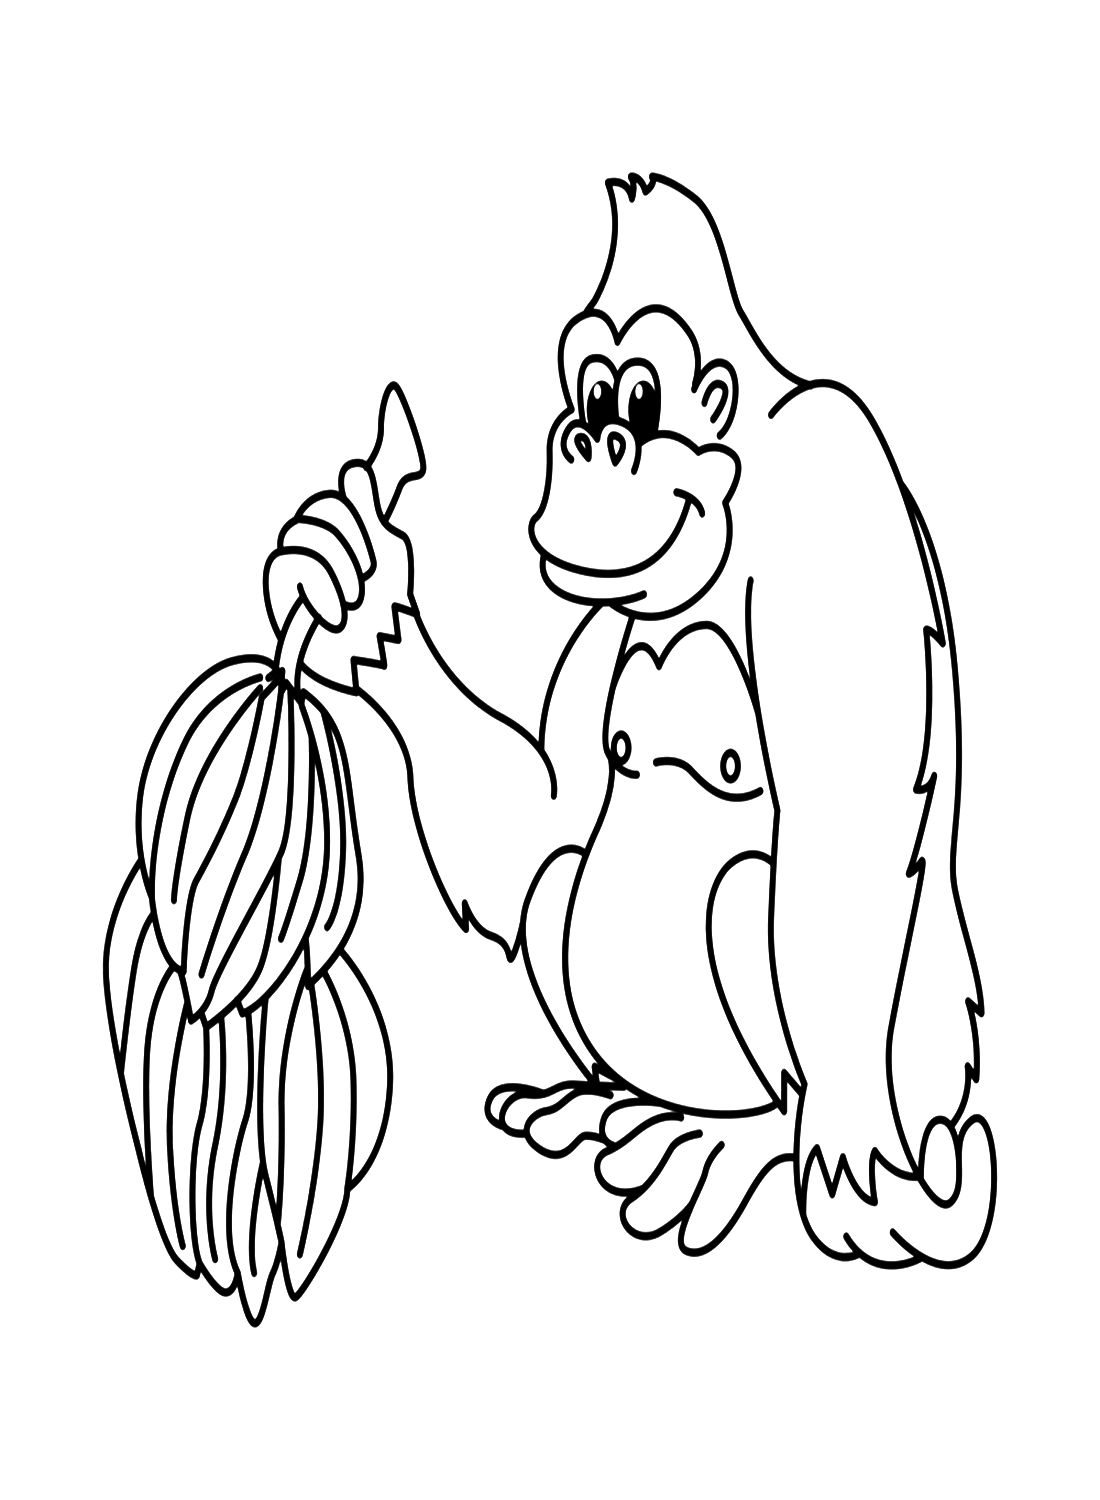 غوريلا تحمل حفنة من الموز من الغوريلا